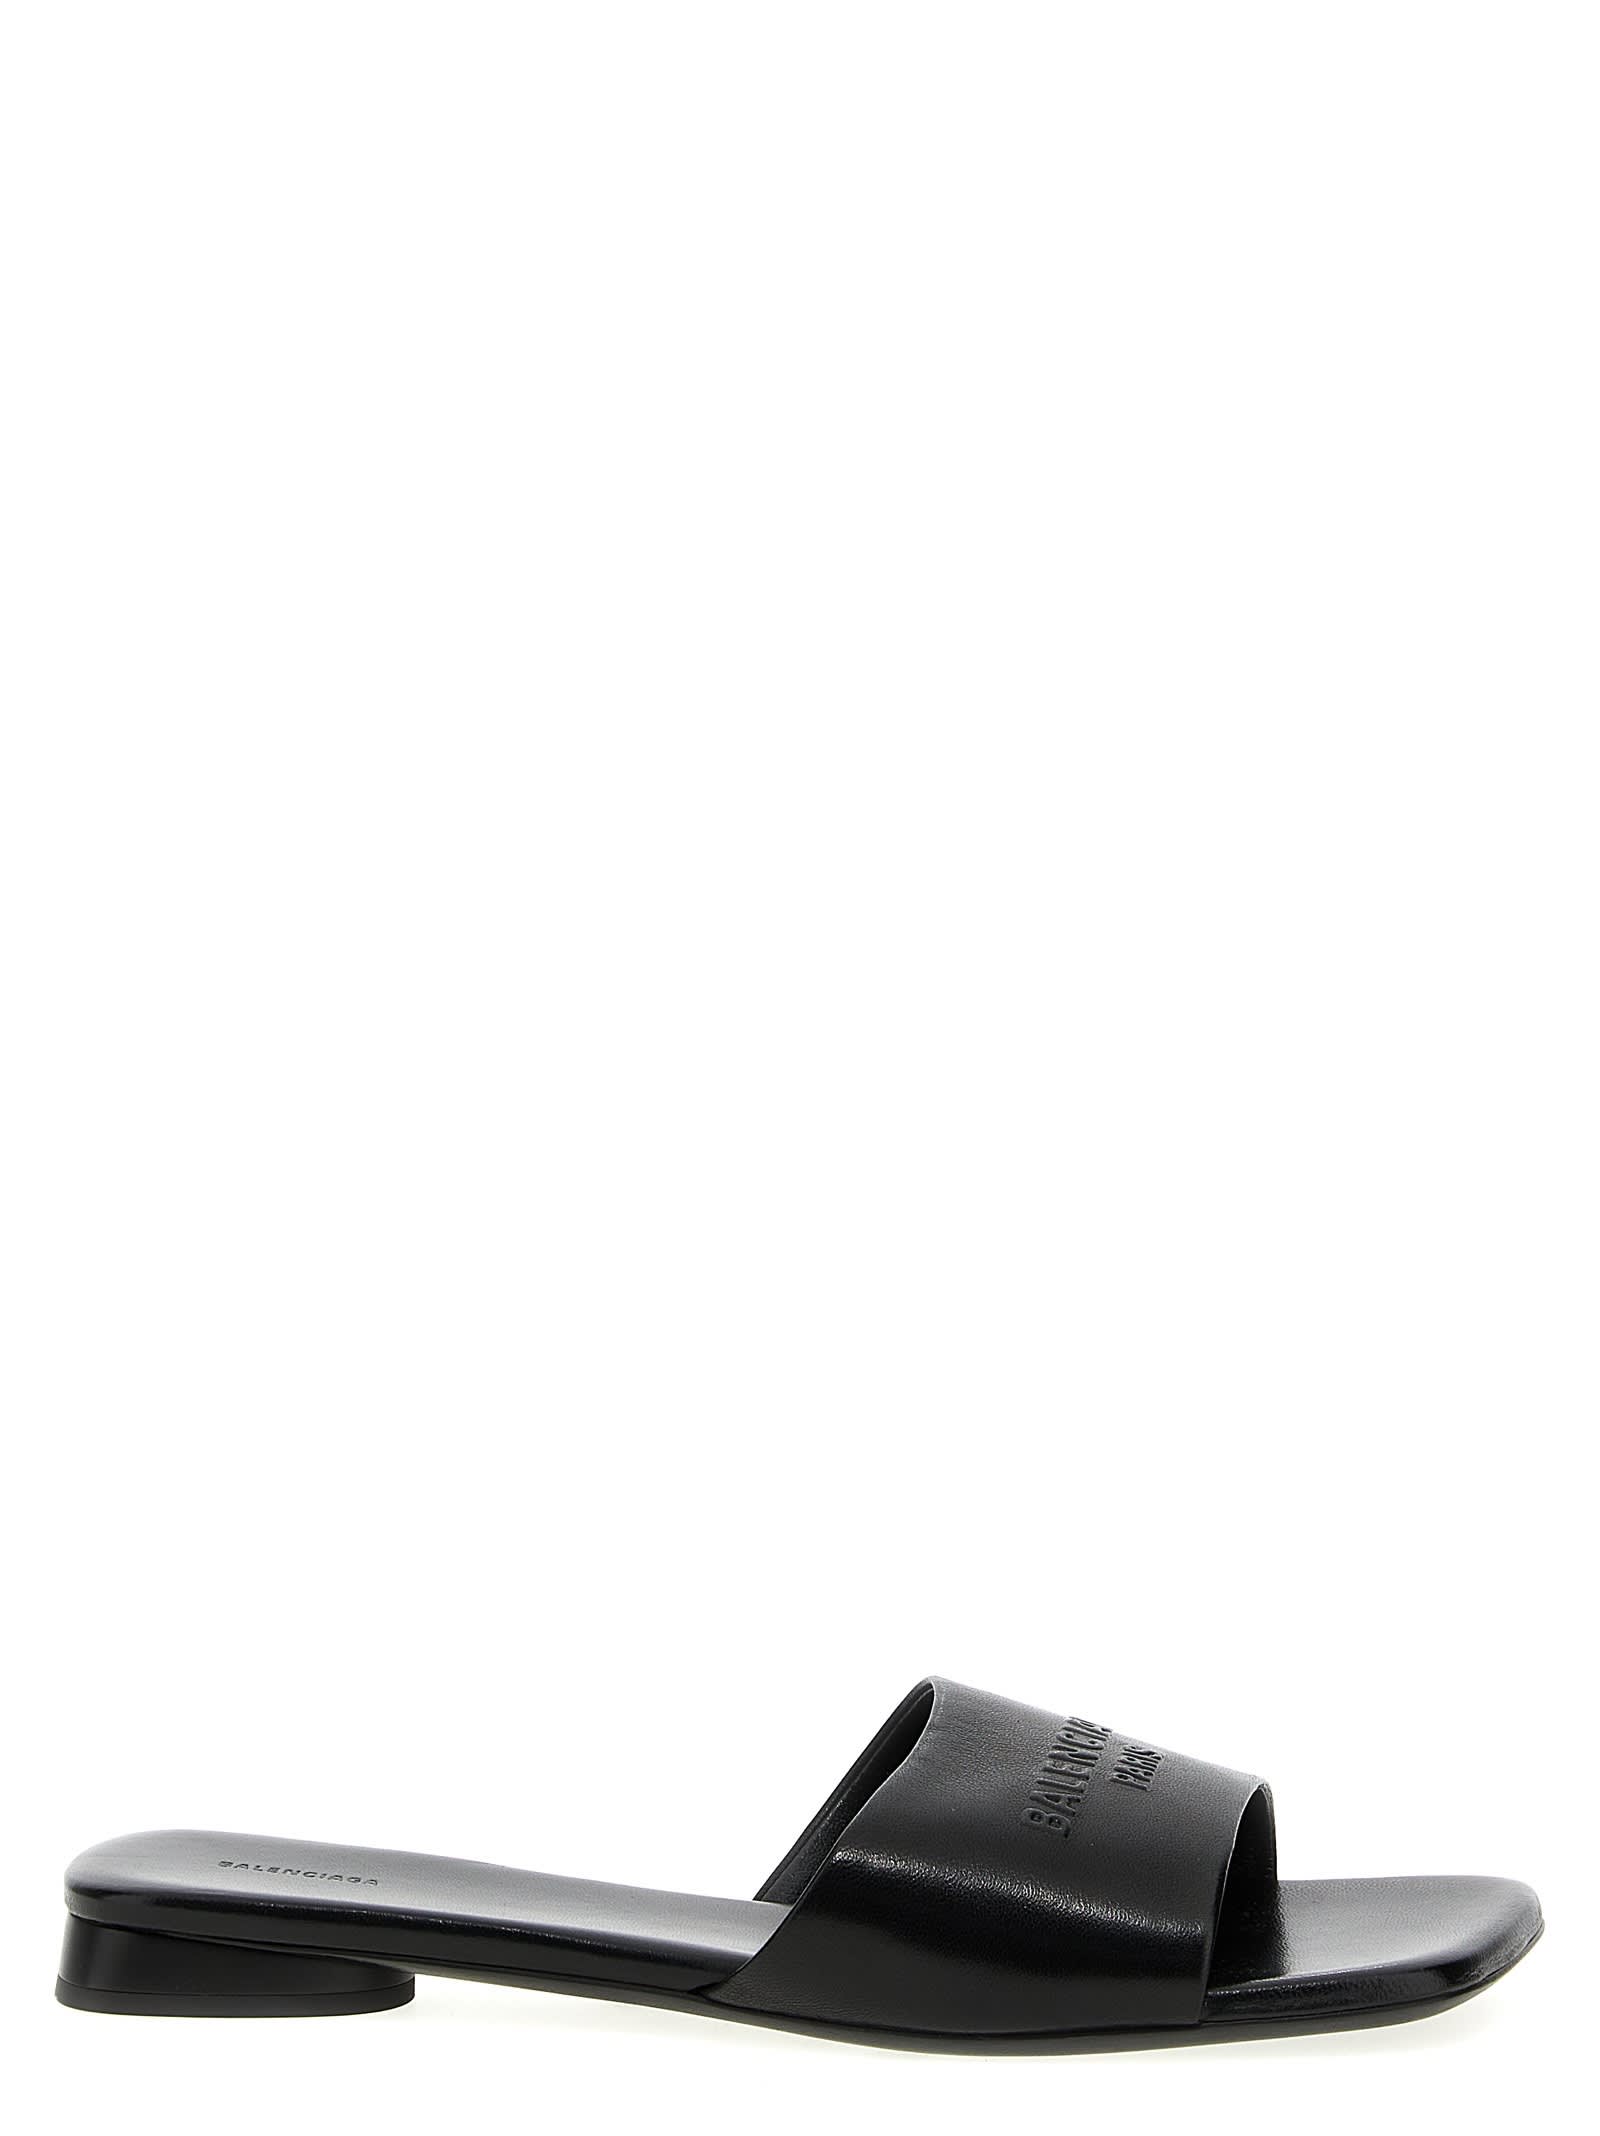 Balenciaga Duty Free Sandals In Black